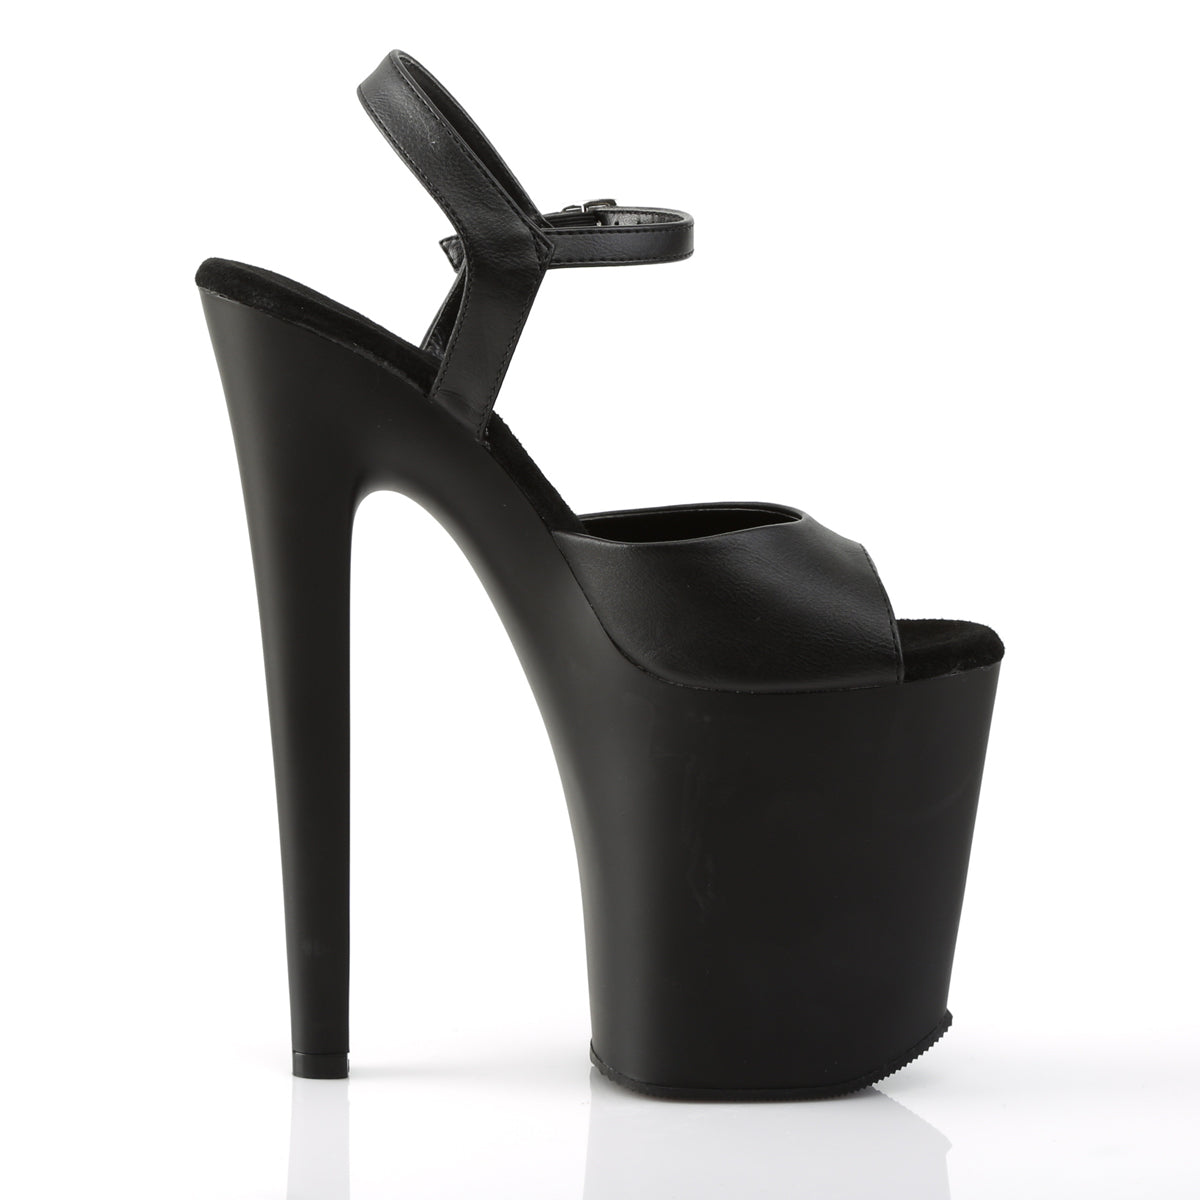 XTREME-809 Pleaser Black Faux Leather/Black Matte Platform Shoes [Exotic Dancing Shoes]